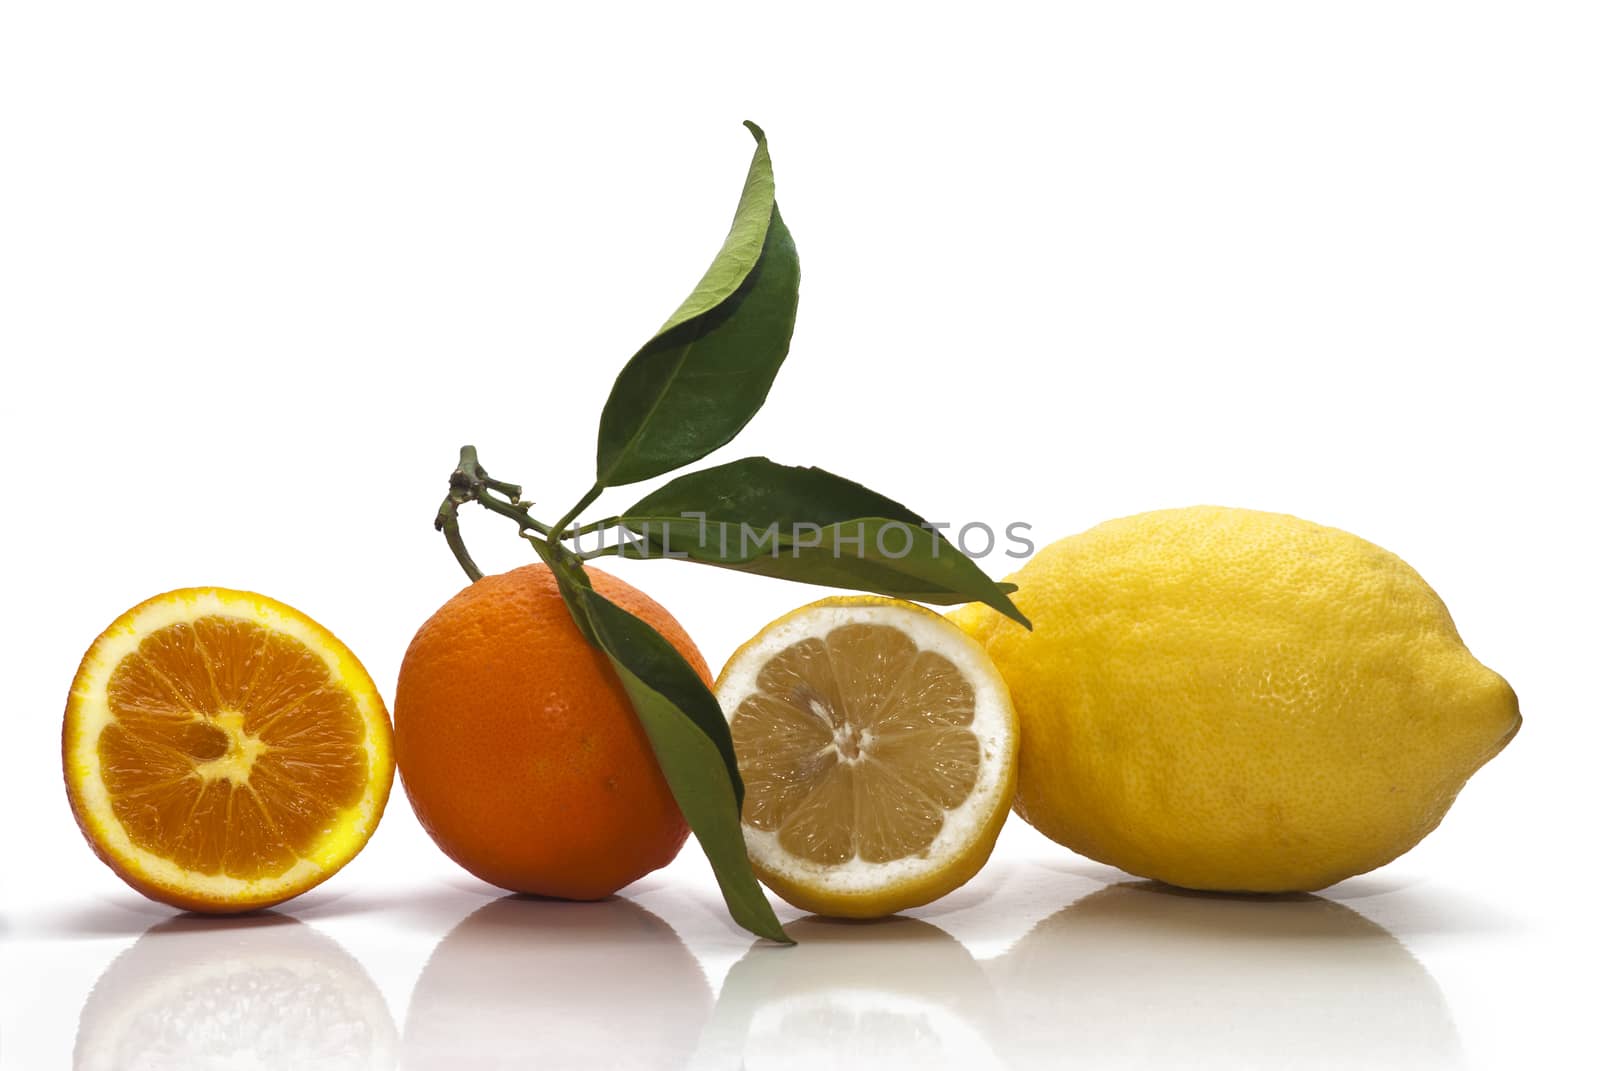 Sicilian Oranges and Lemons on white background by gandolfocannatella